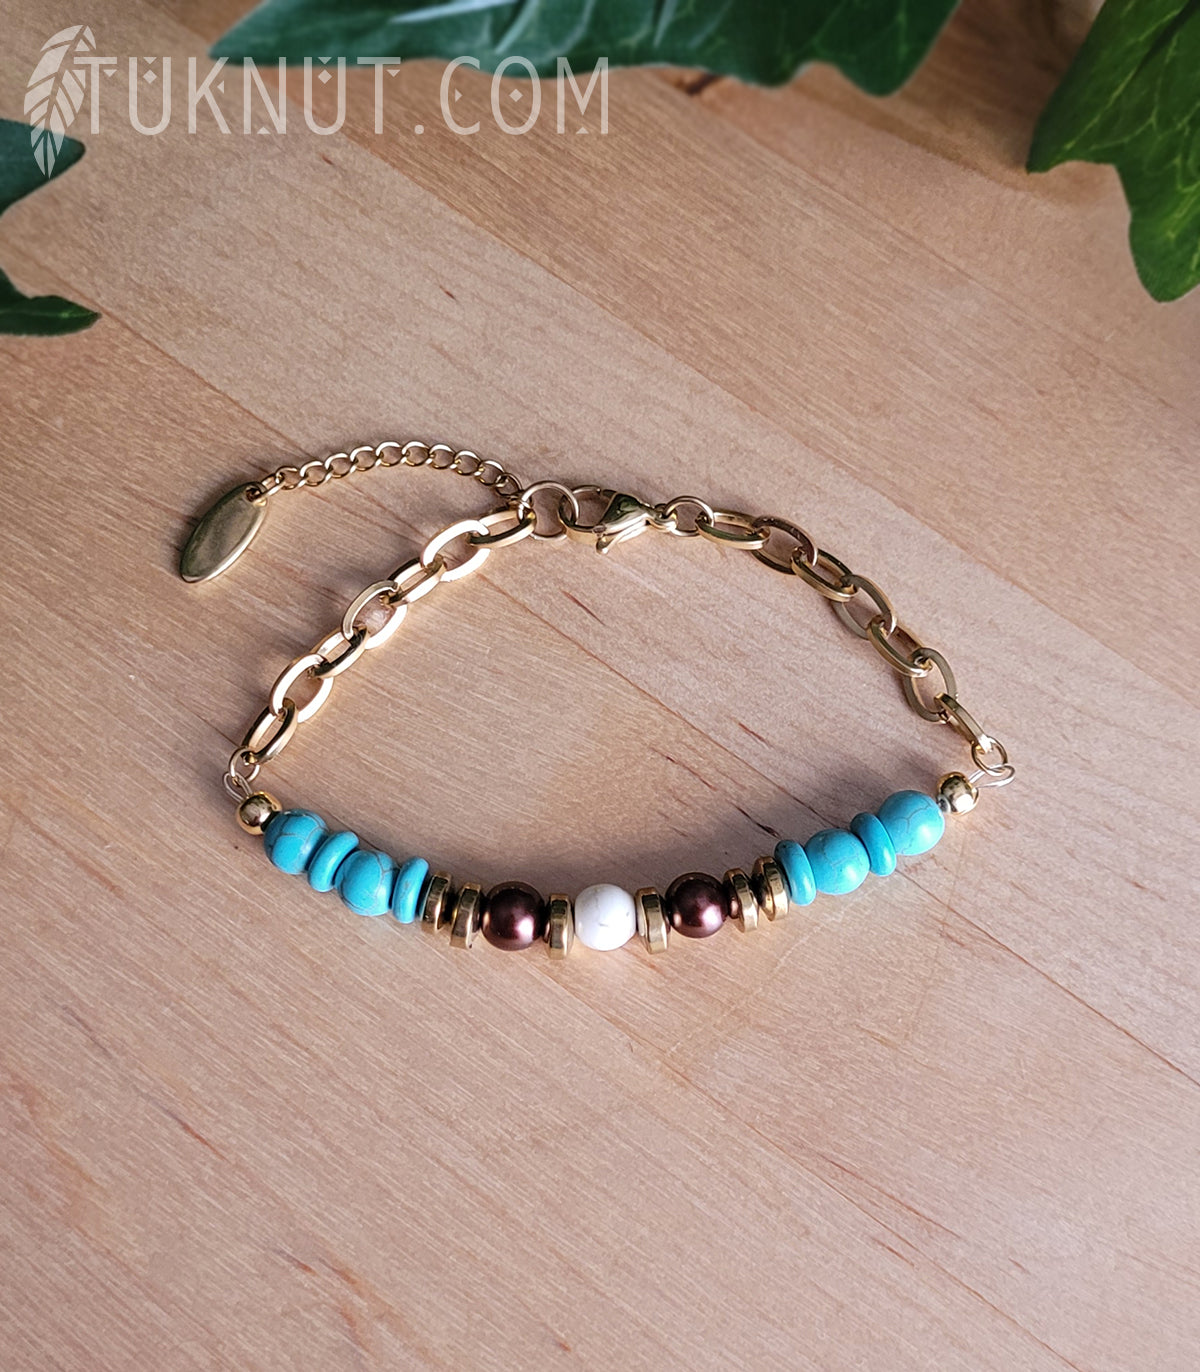 Bracelet d'inspiration autochtone avec turquoise, hématite, verre et chaîne en acier inoxydable (couleurs : turquoise, beige, brun et or) TUKNUT